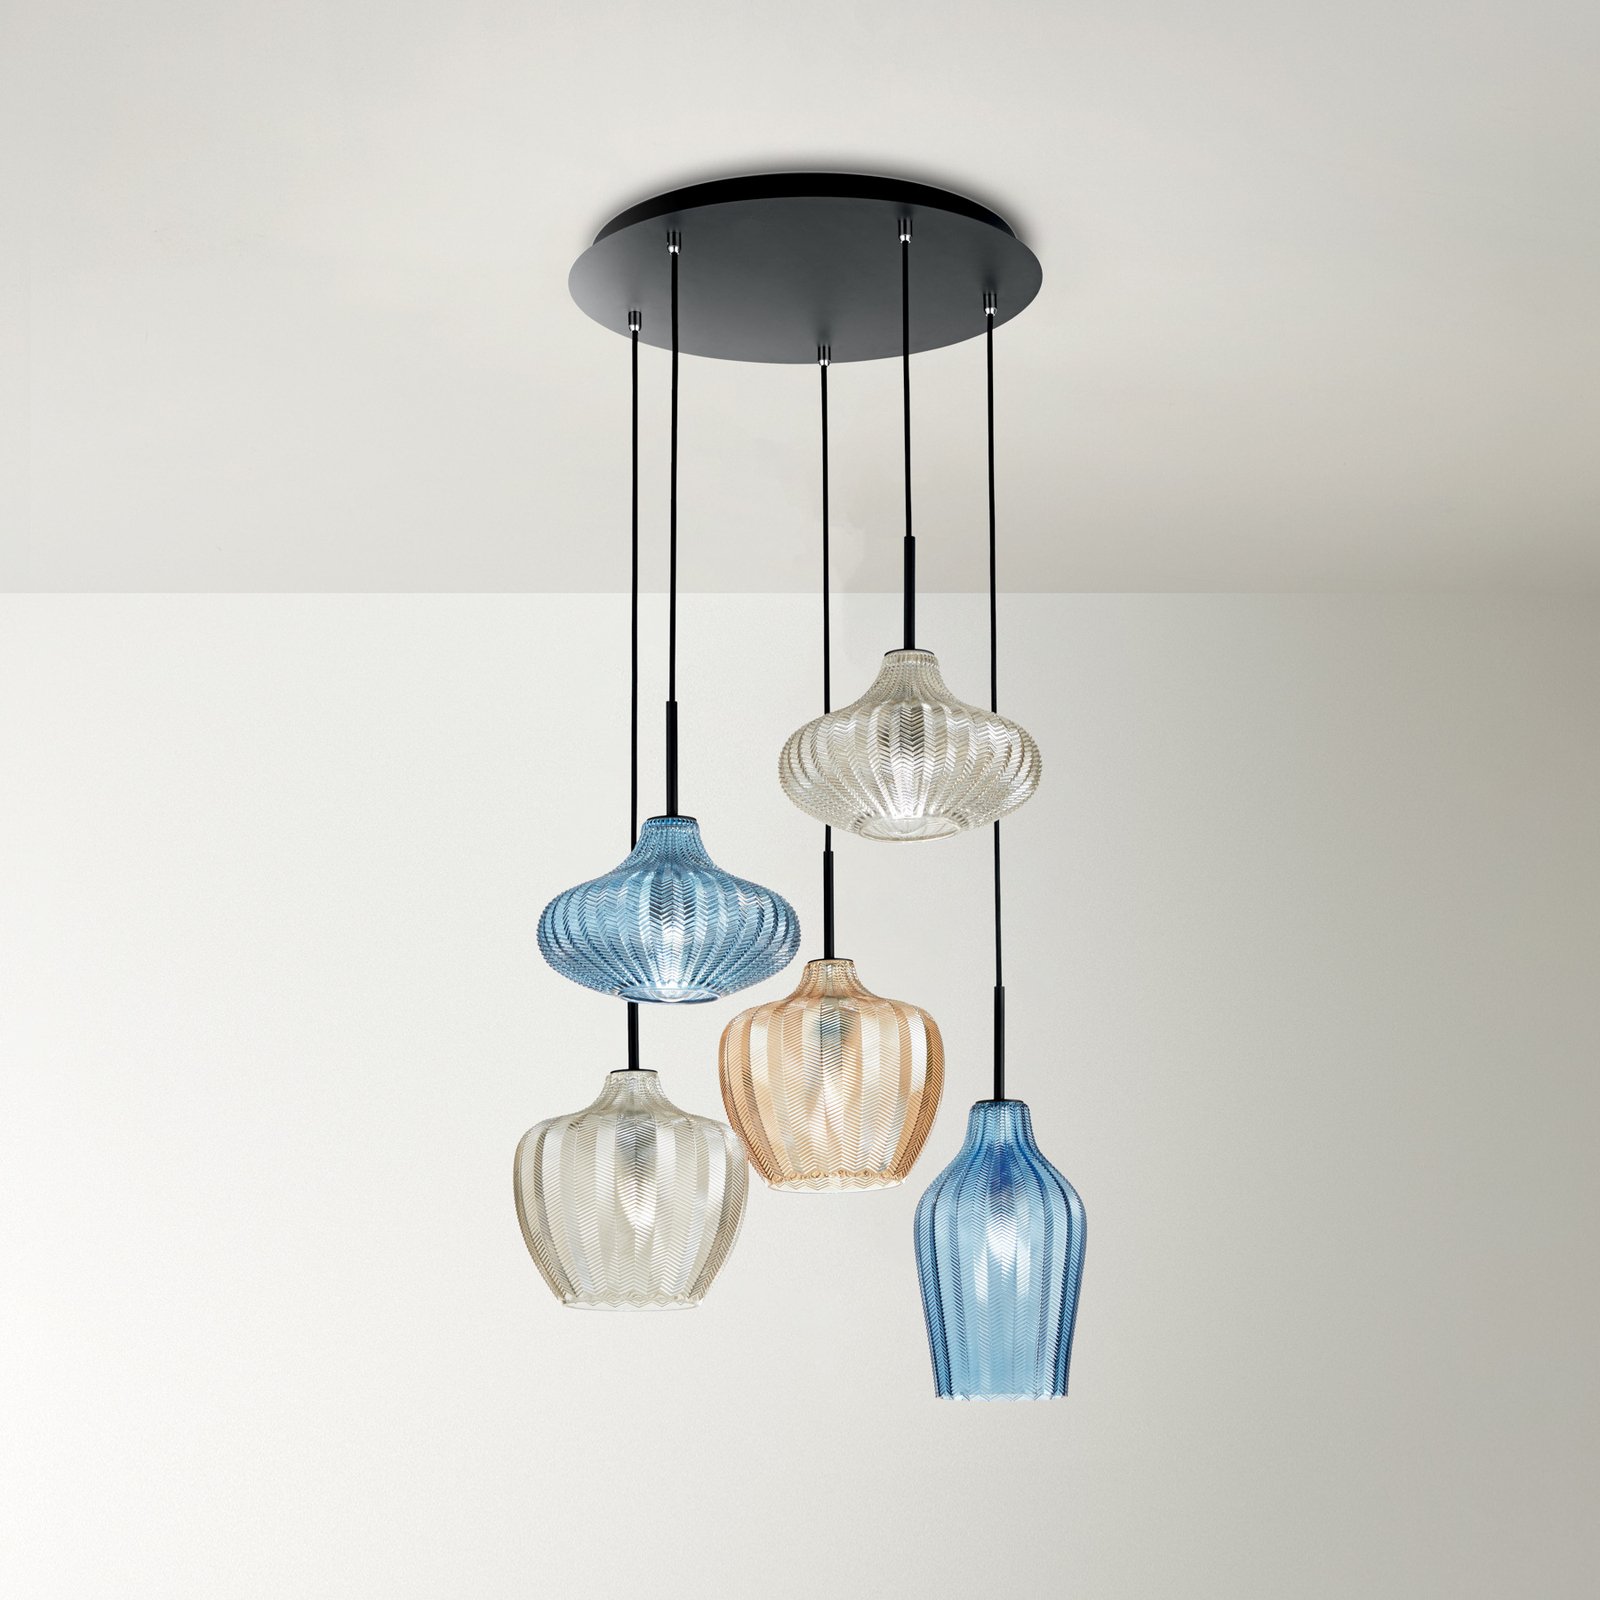 Hængelampe Olbia, Ø 50 cm, 5 lyskilder, rav/blå/beige, glas